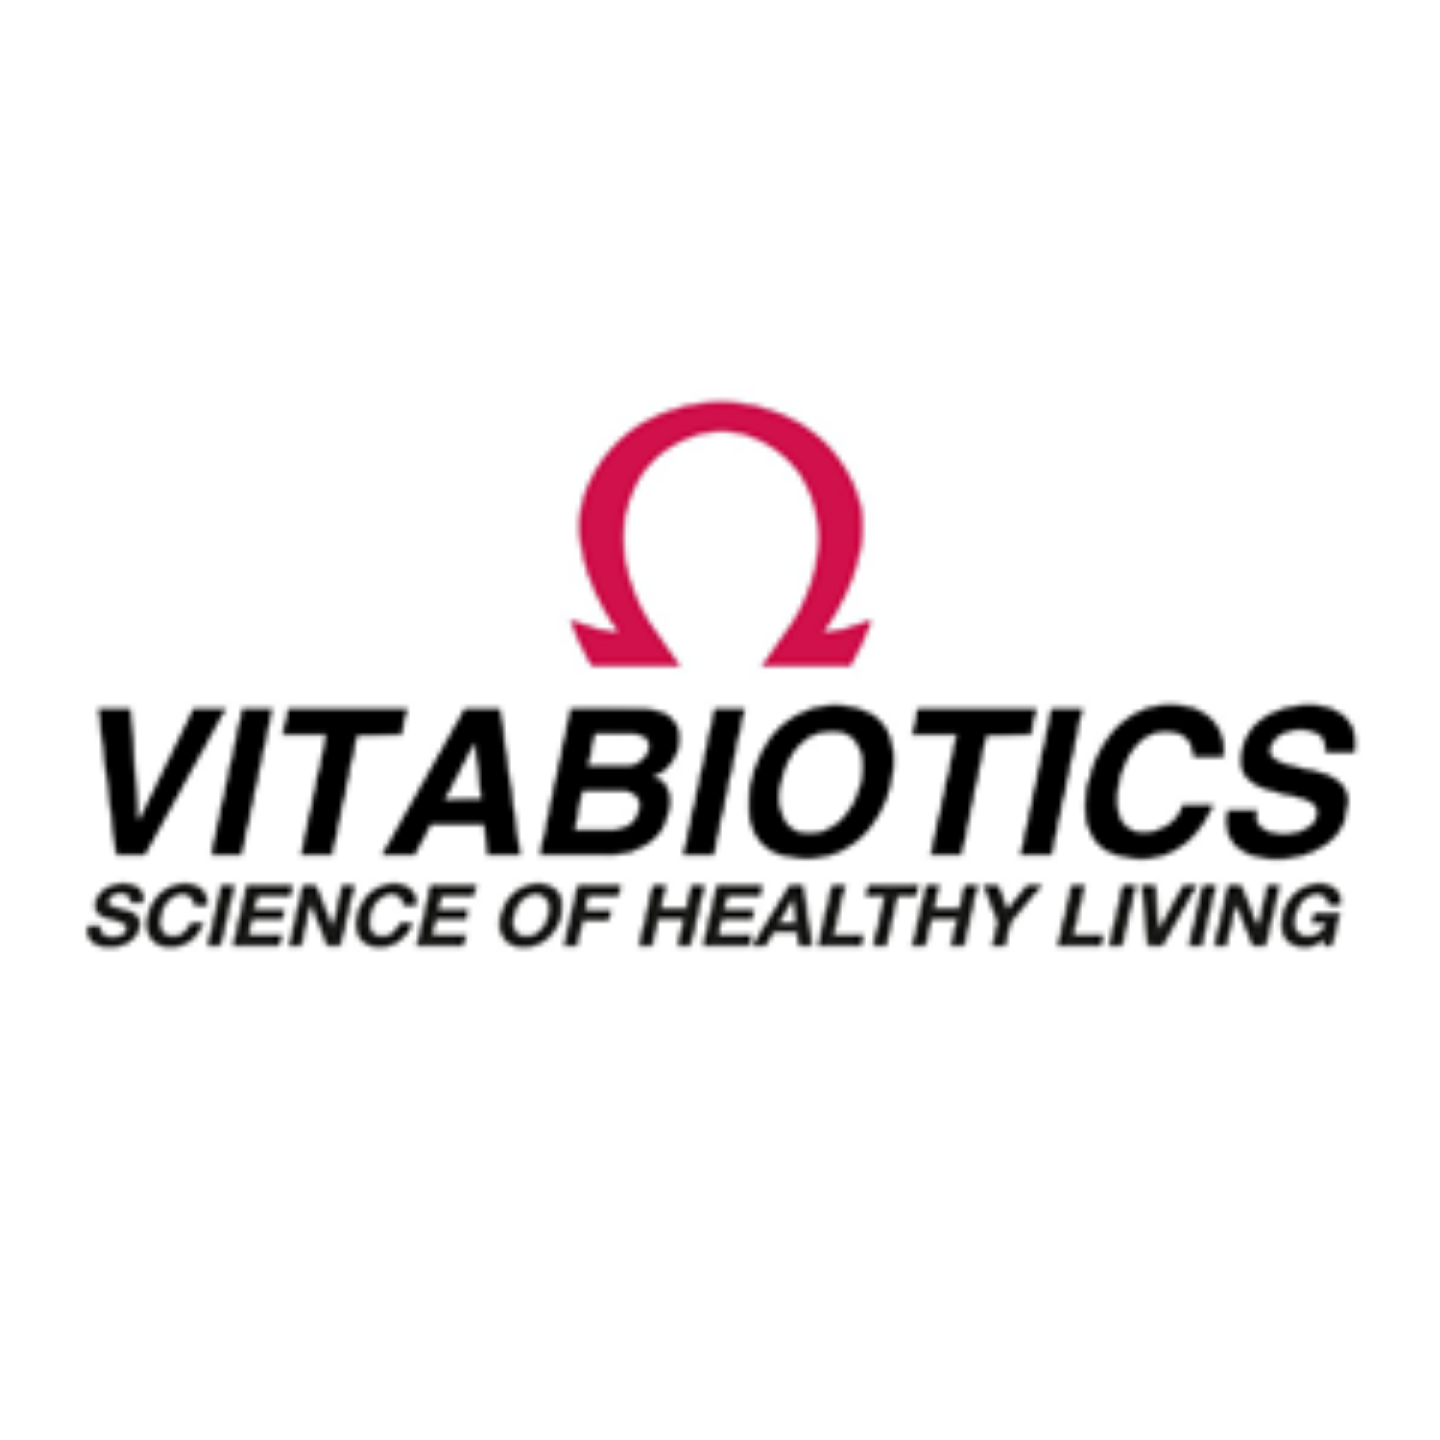 Picture for manufacturer vitabiotics